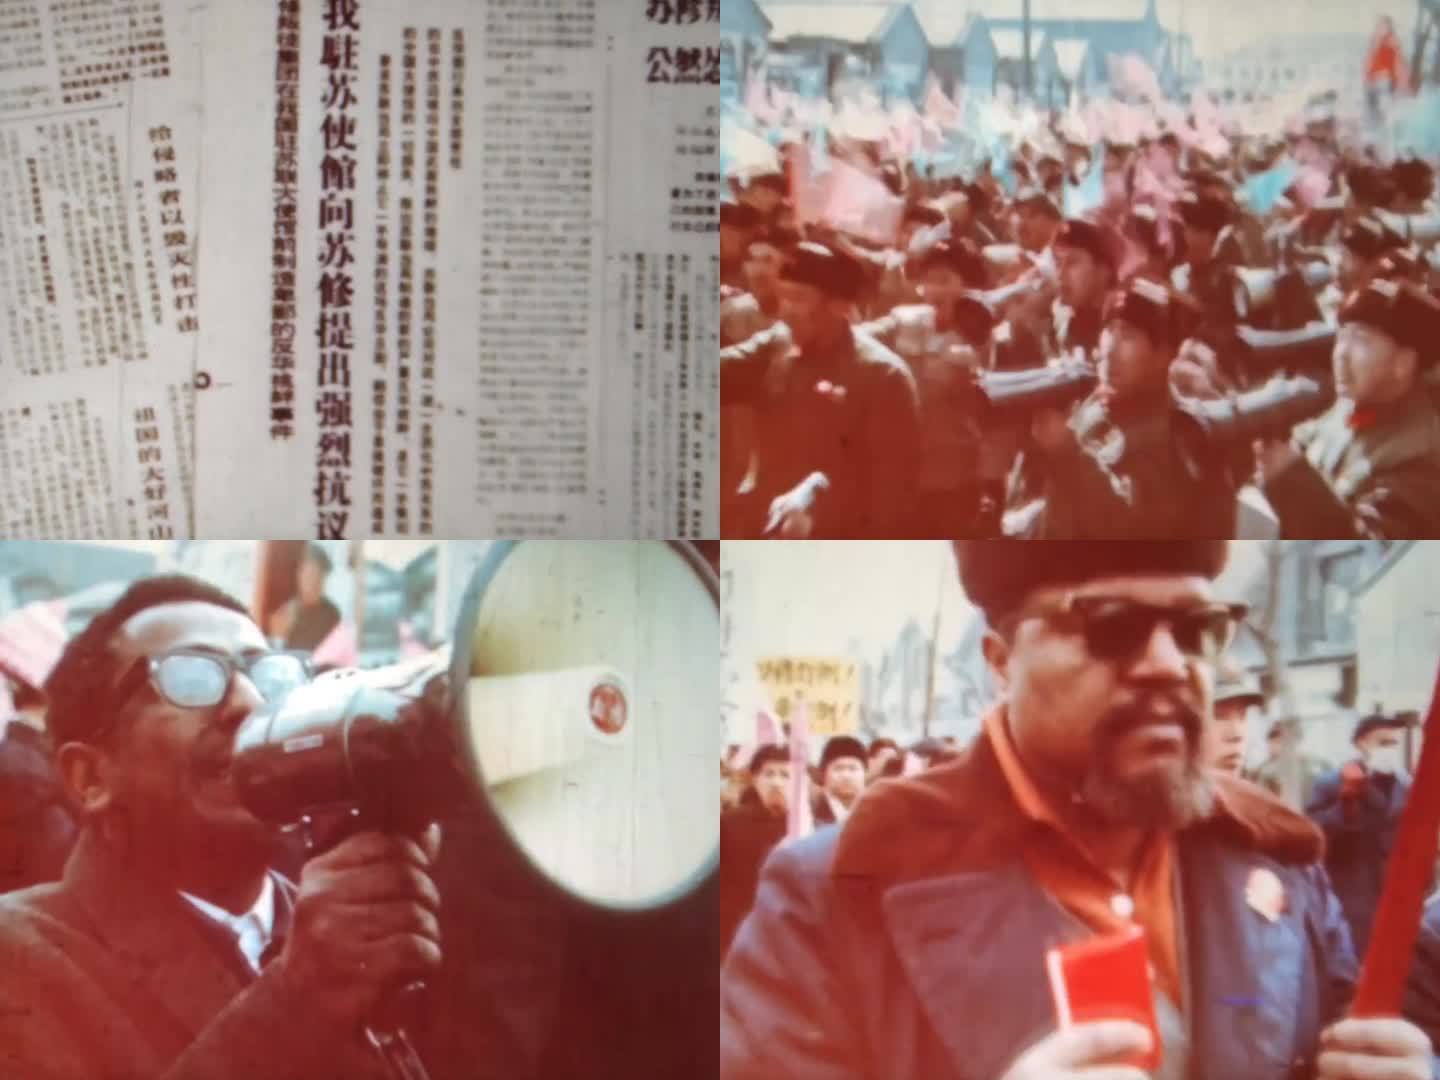 群众抗议苏联沙文主义